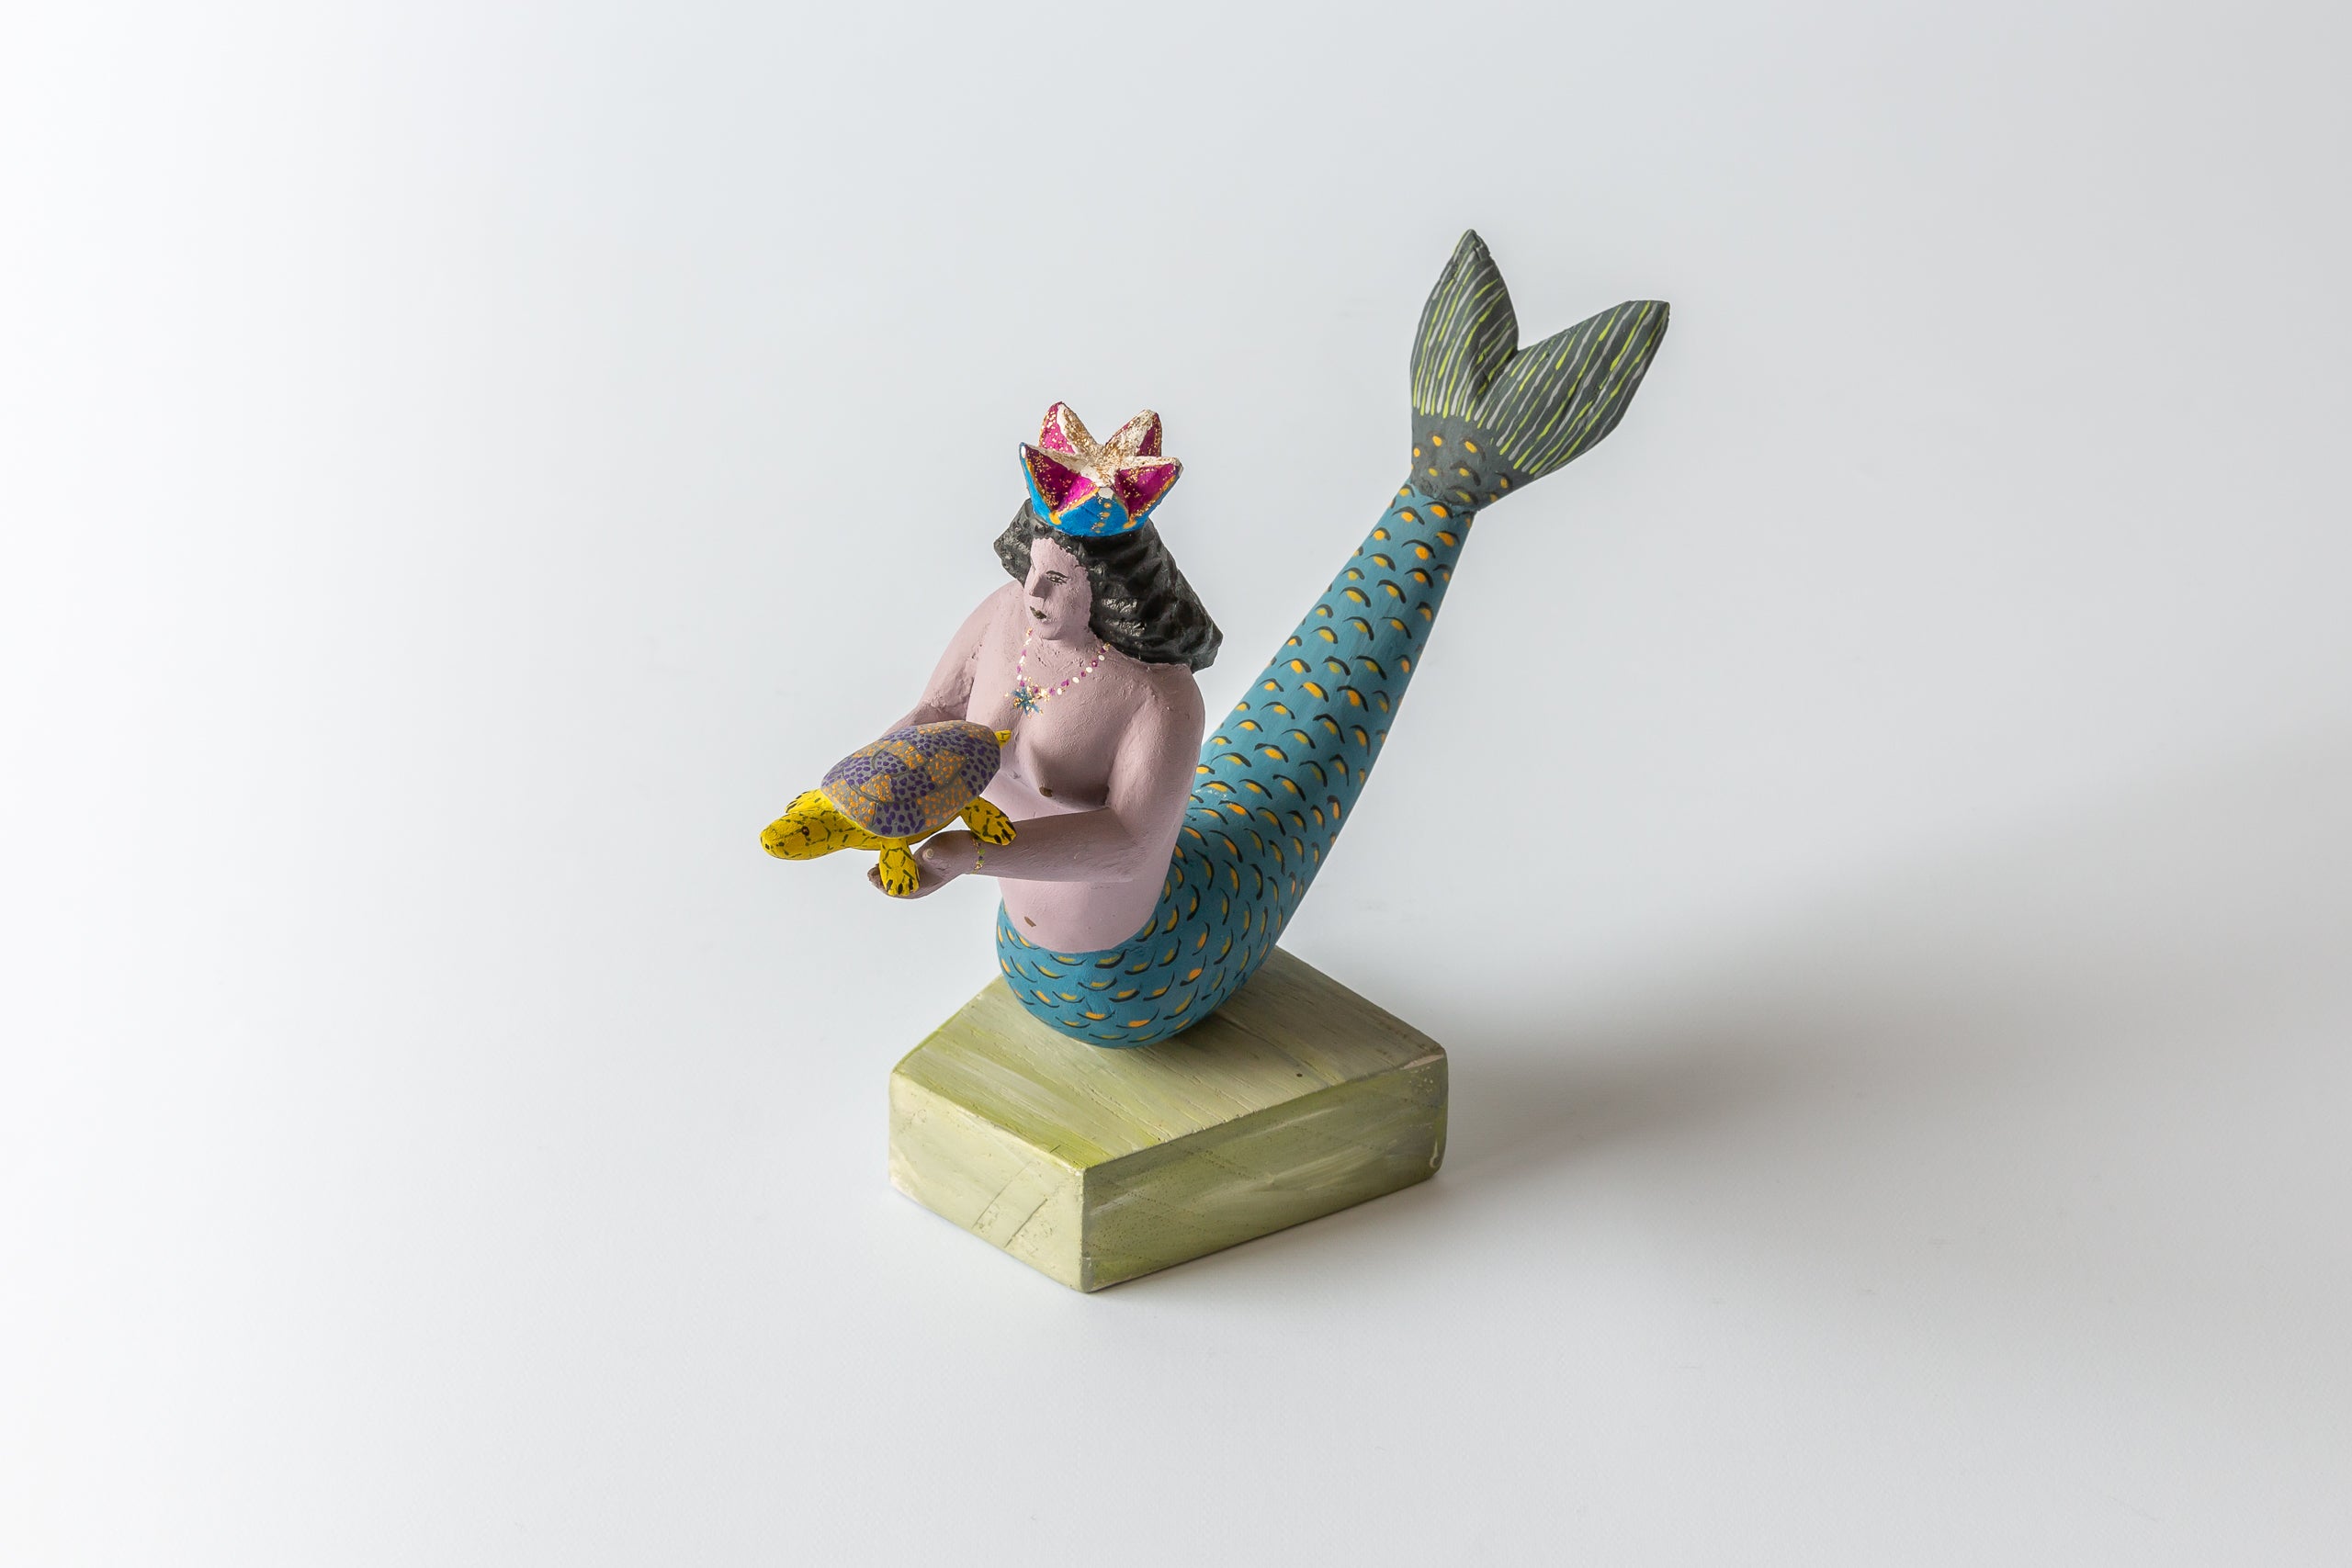 Gabino Reyes Lopez Mermaid with Tortoise, woodcarving painted